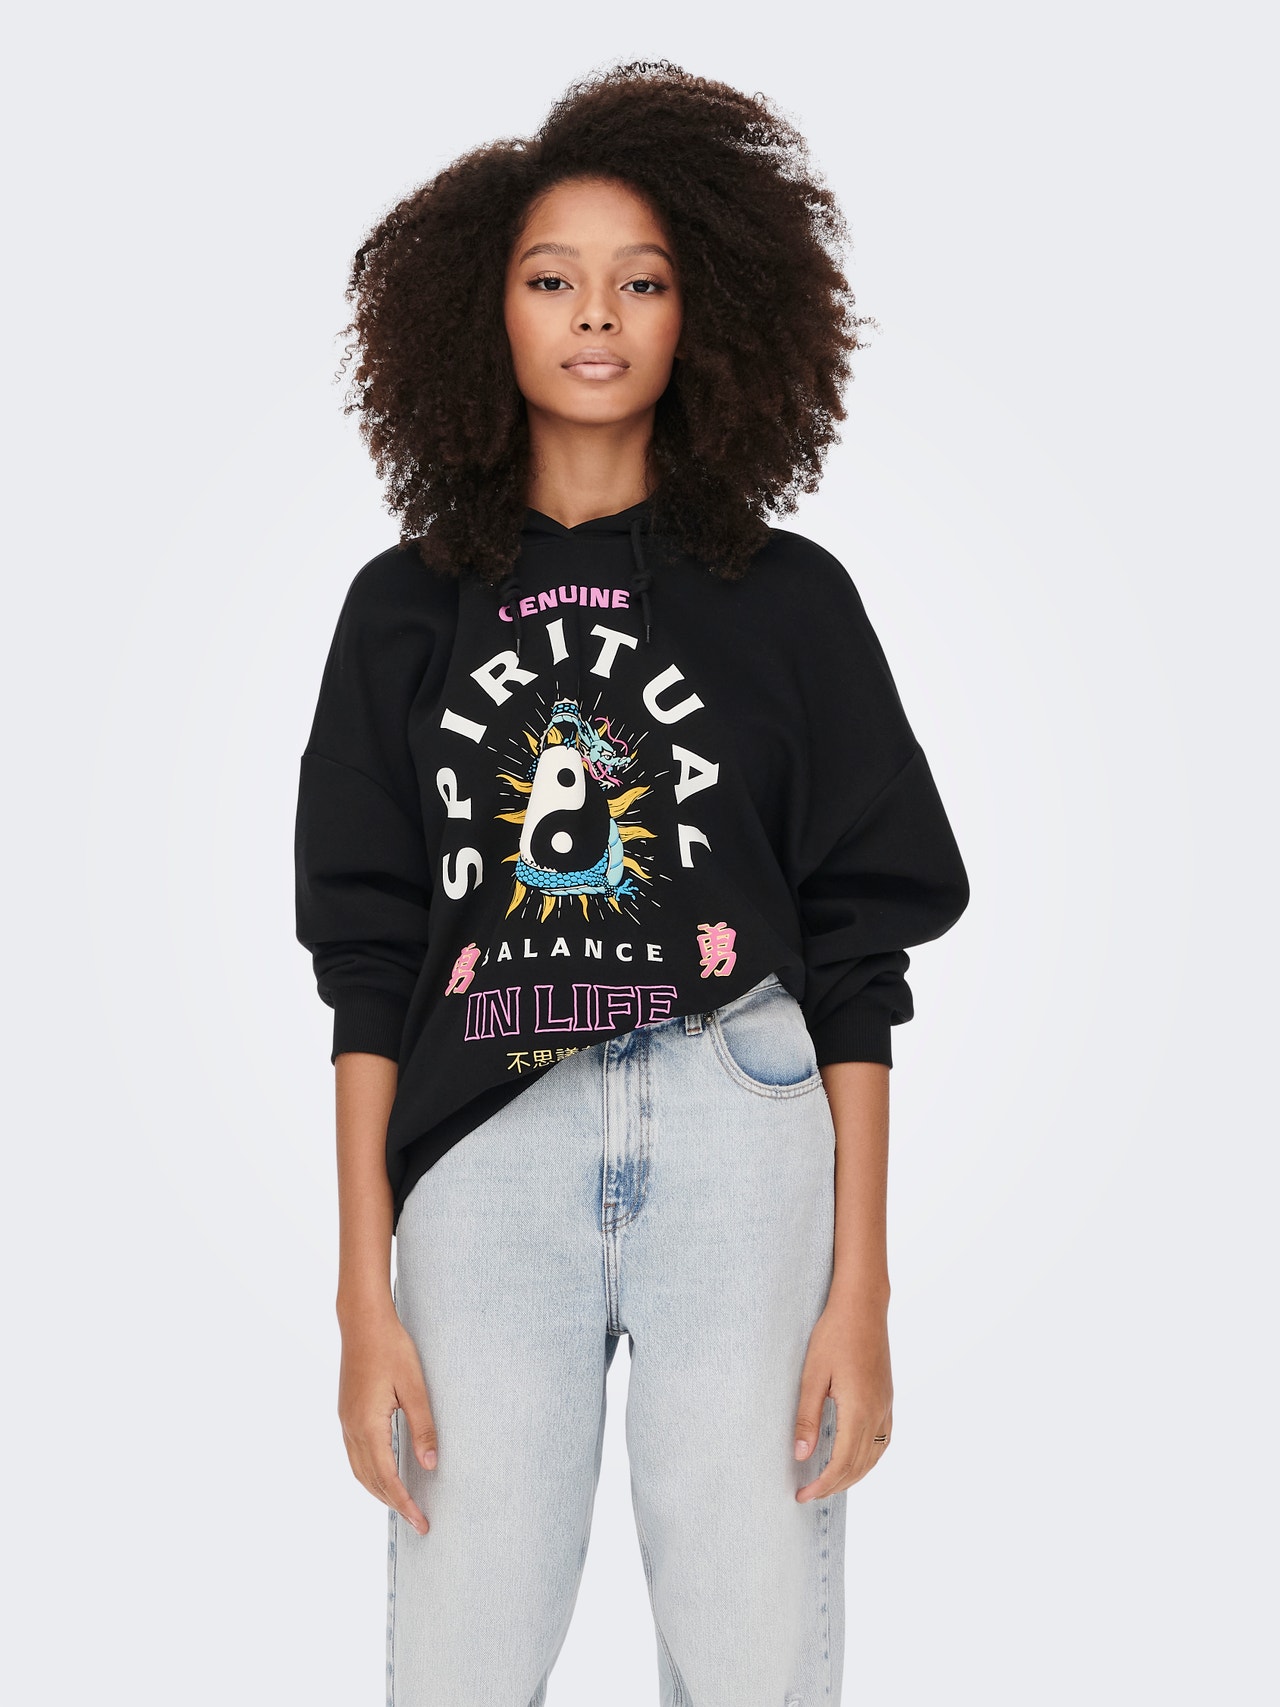 ONLY Oversized fit Hoodie Sweatshirt -Black - 15276235